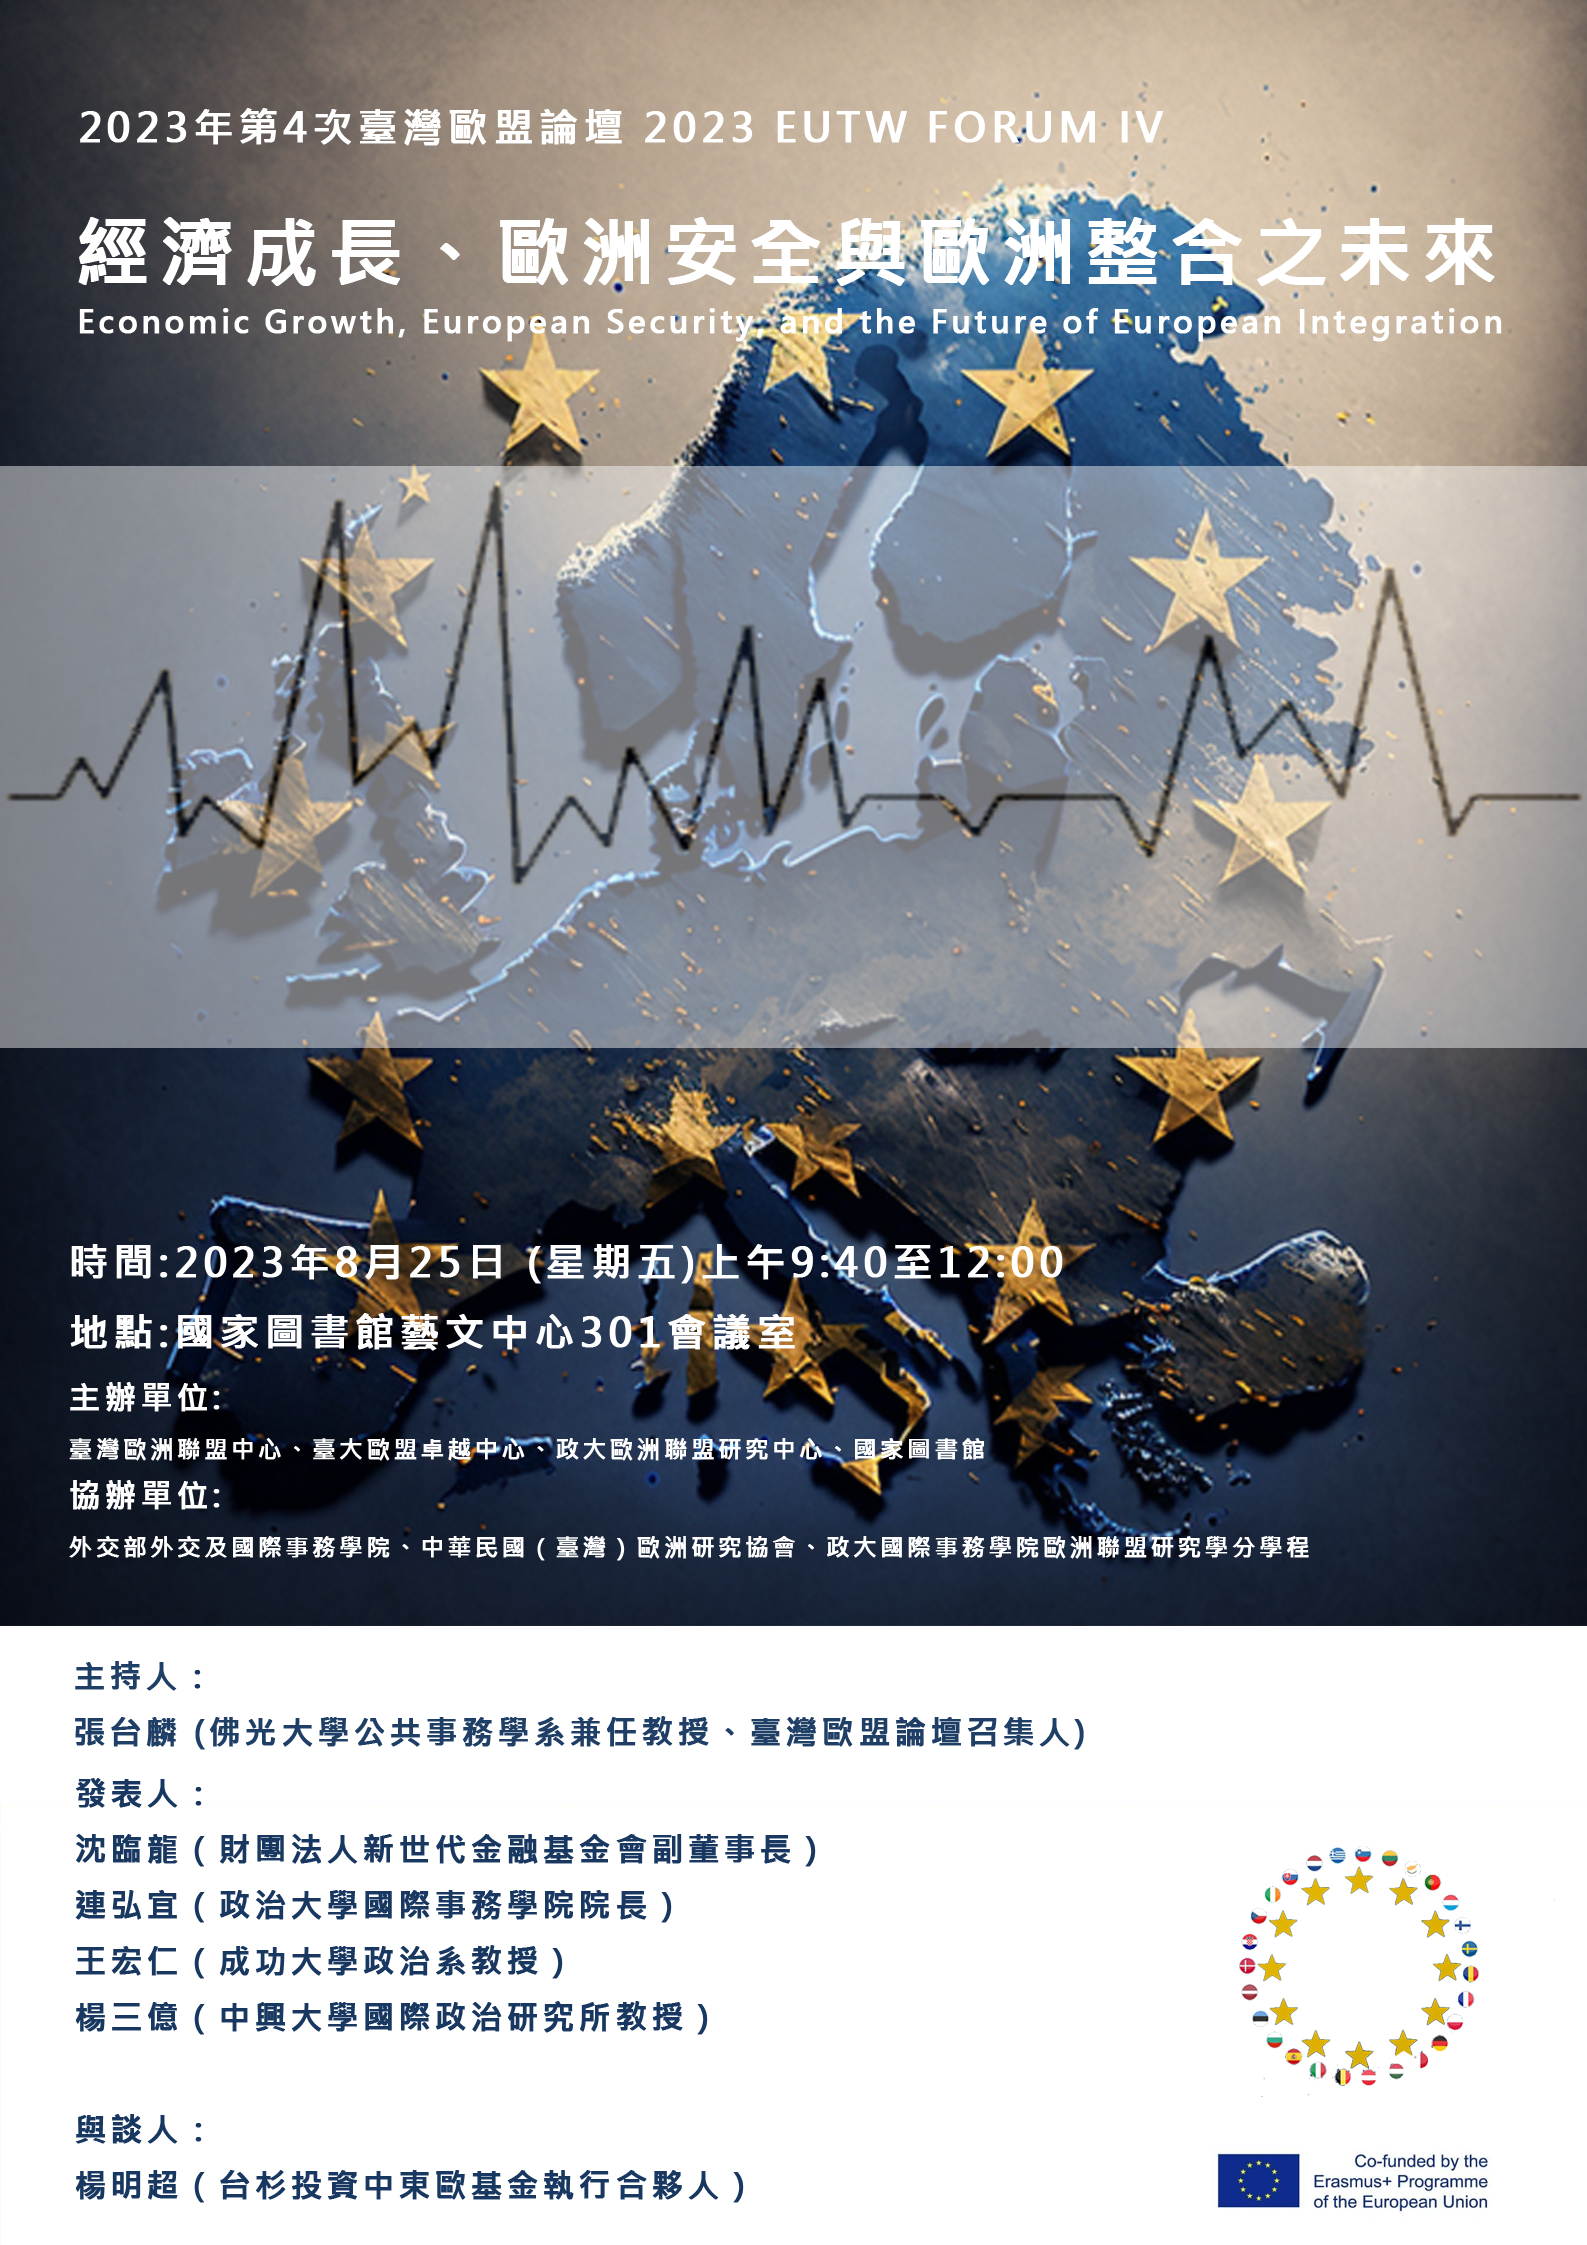 【歐盟學程與台大合辦之論壇活動】2023年第4次臺灣歐盟論壇-經濟成長、歐洲安全與歐洲整合之未來